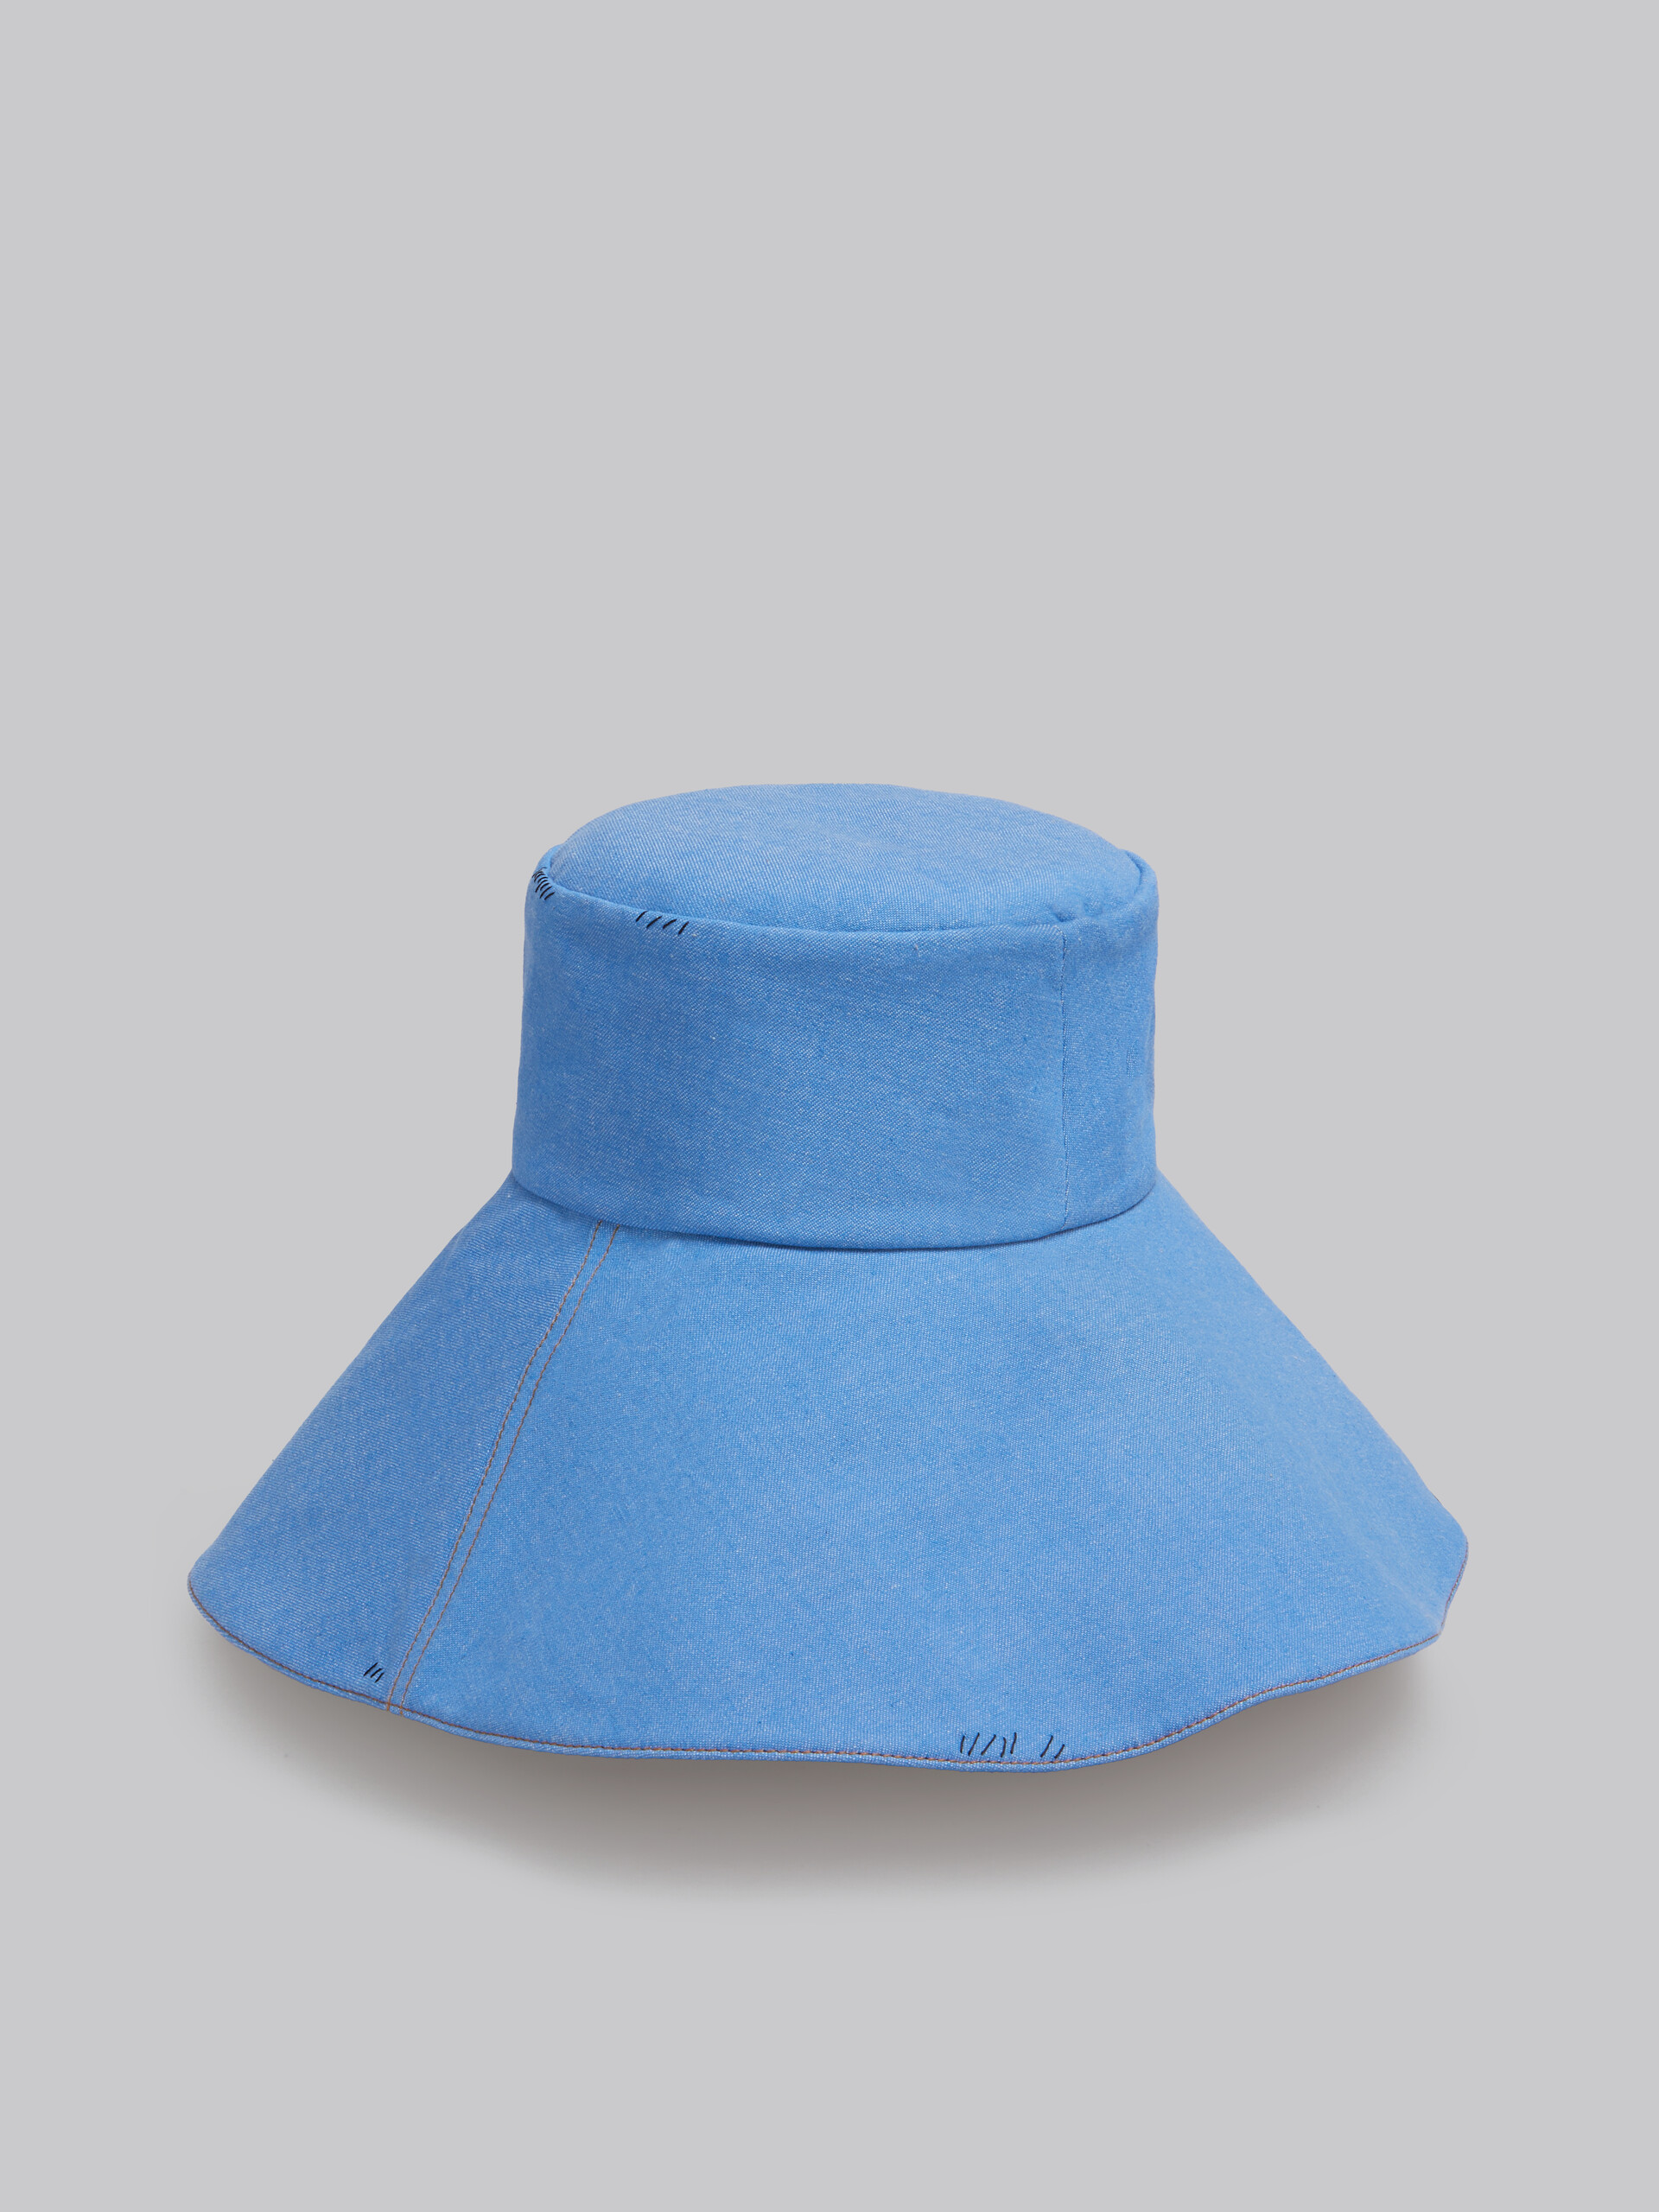 마르니 멘딩 장식 블루 데님 버킷 햇 - 모자 - Image 3